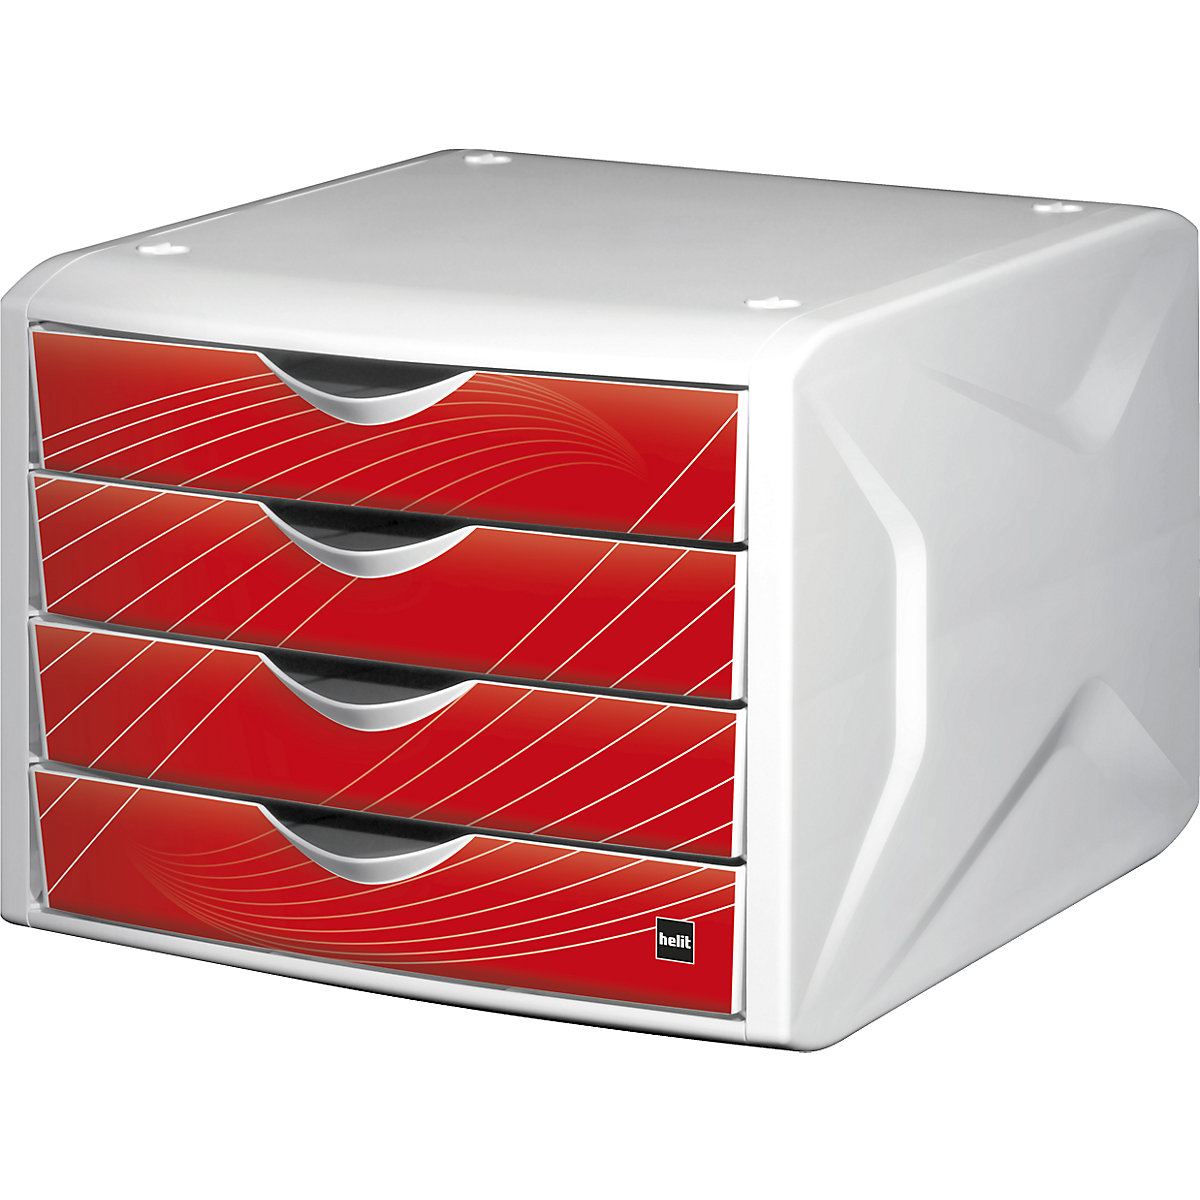 Caixa de gavetas – helit, AxLxP 212 x 262 x 330 mm, embalagem de 5 unid., design das gavetas red rook-3